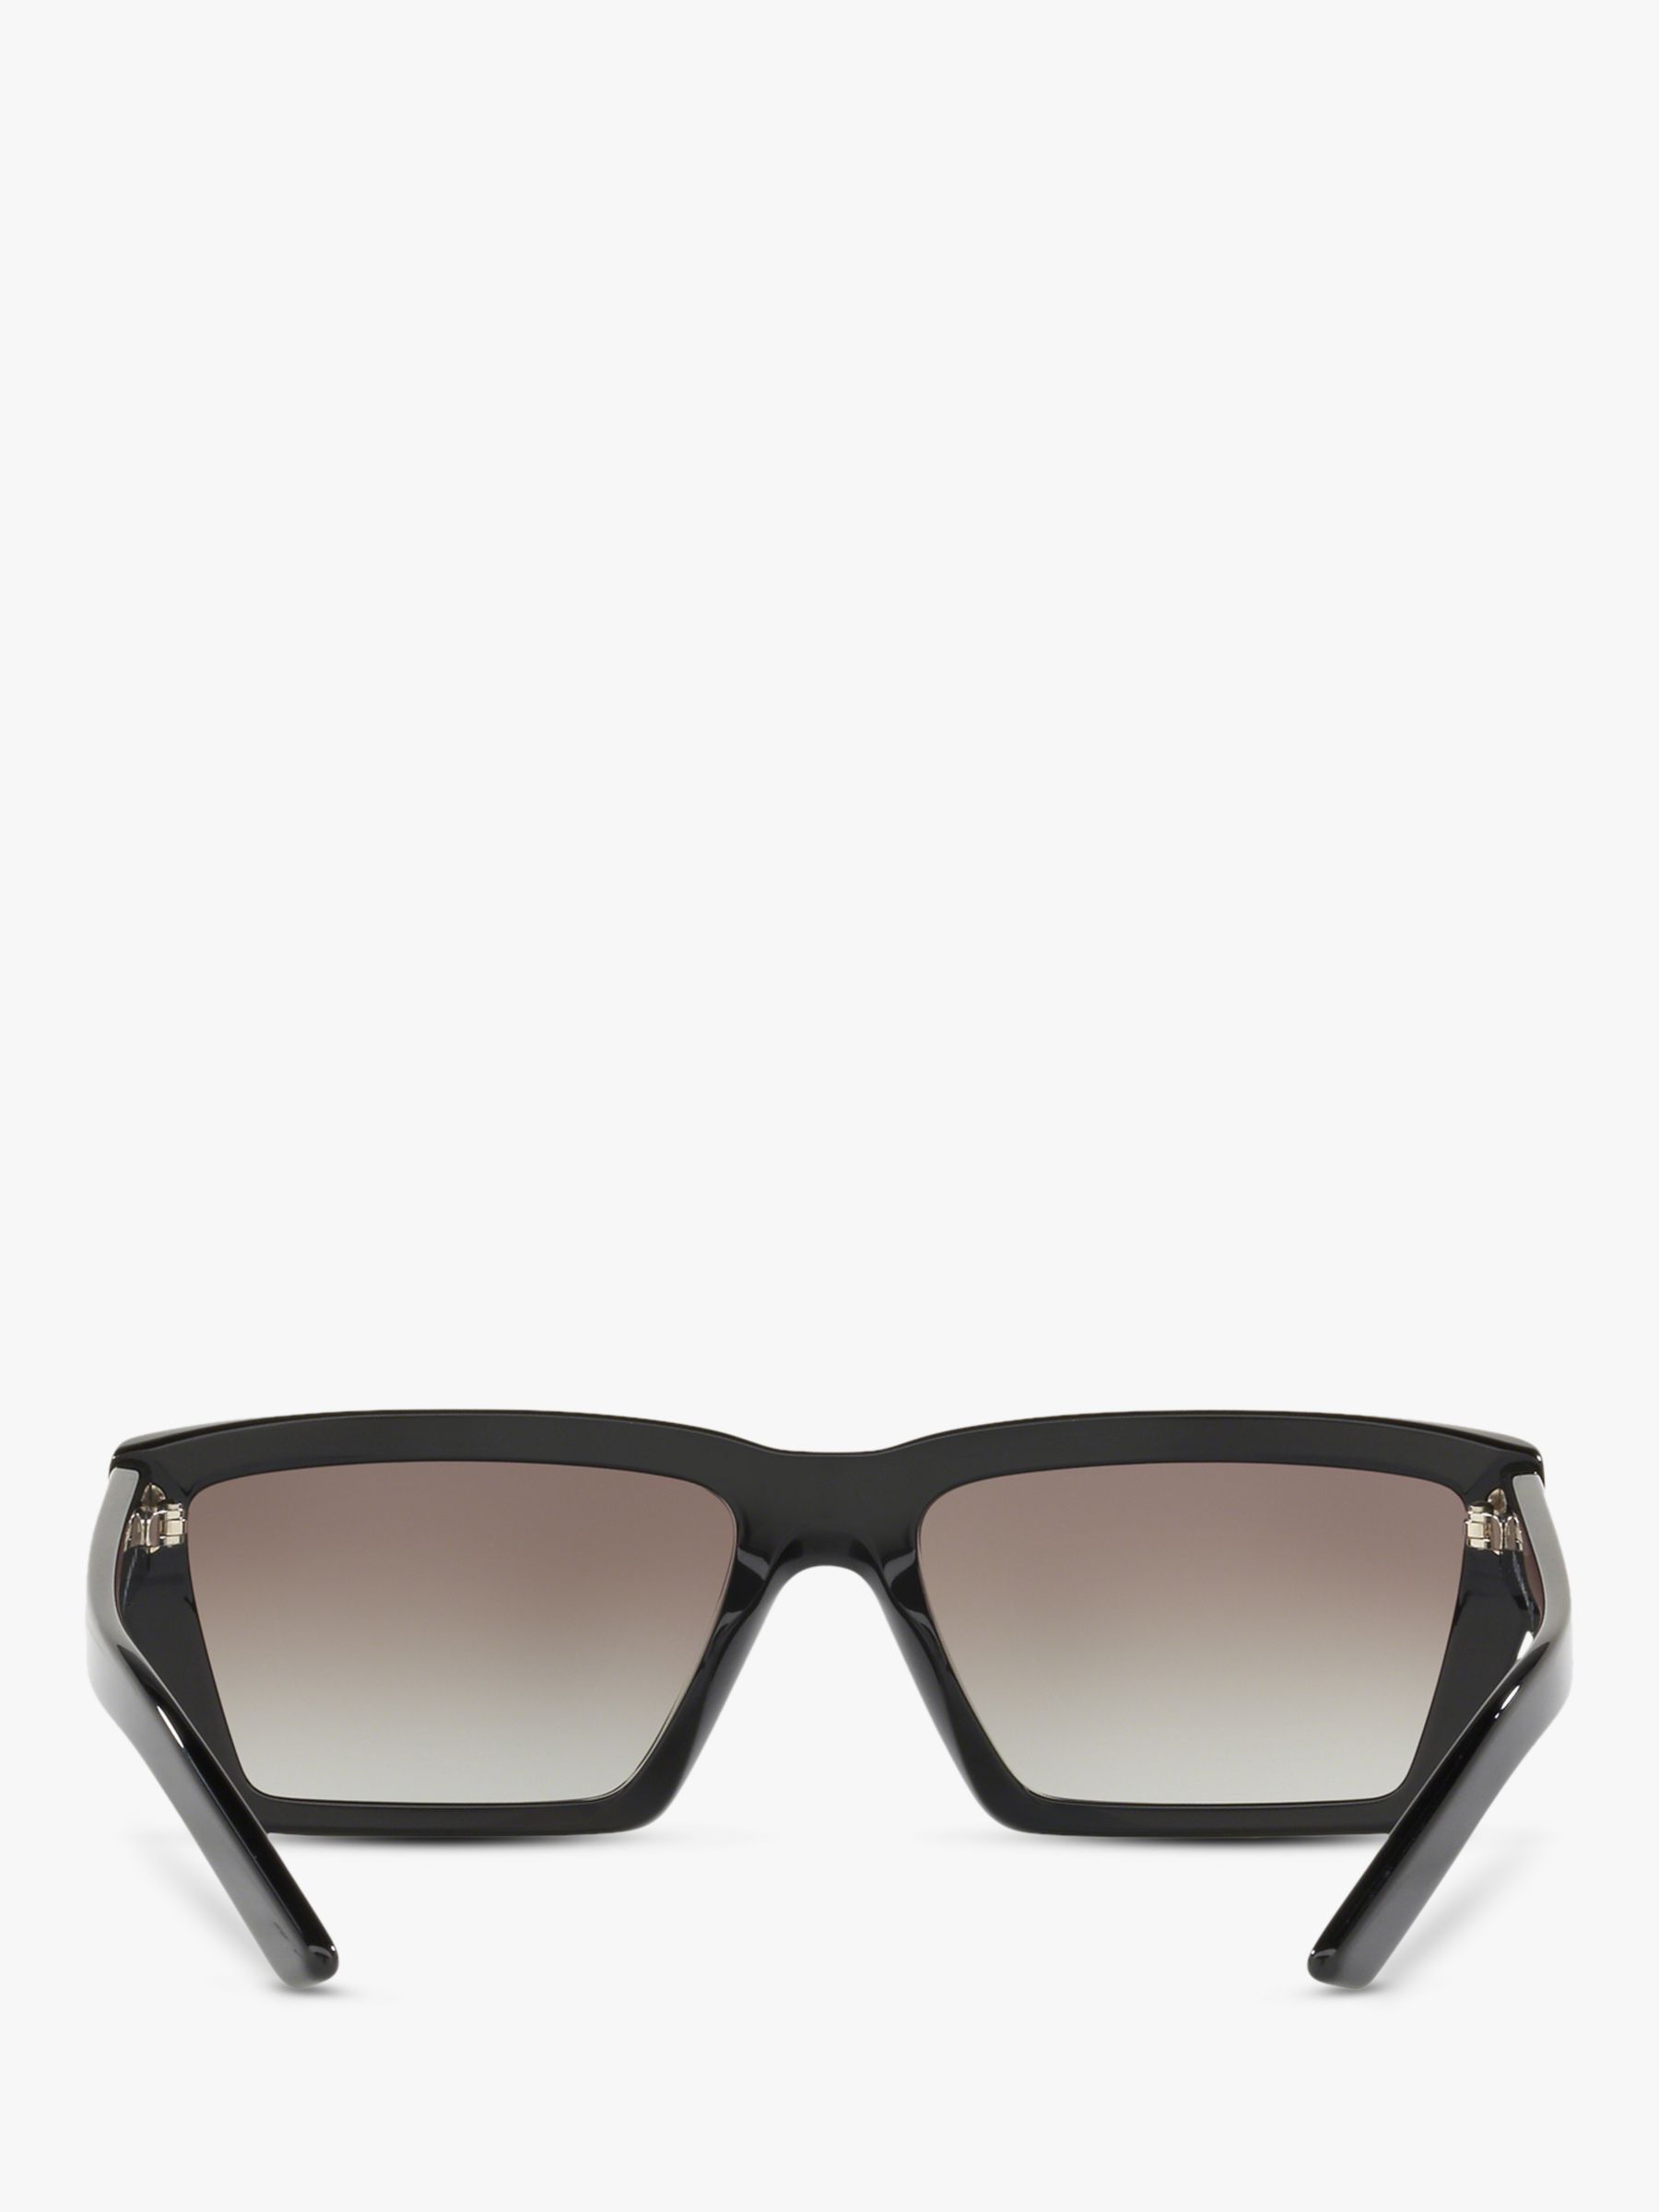 Prada PR 04VS Women's Rectangular Sunglasses, Matte Black/Grey Gradient at John Lewis & Partners